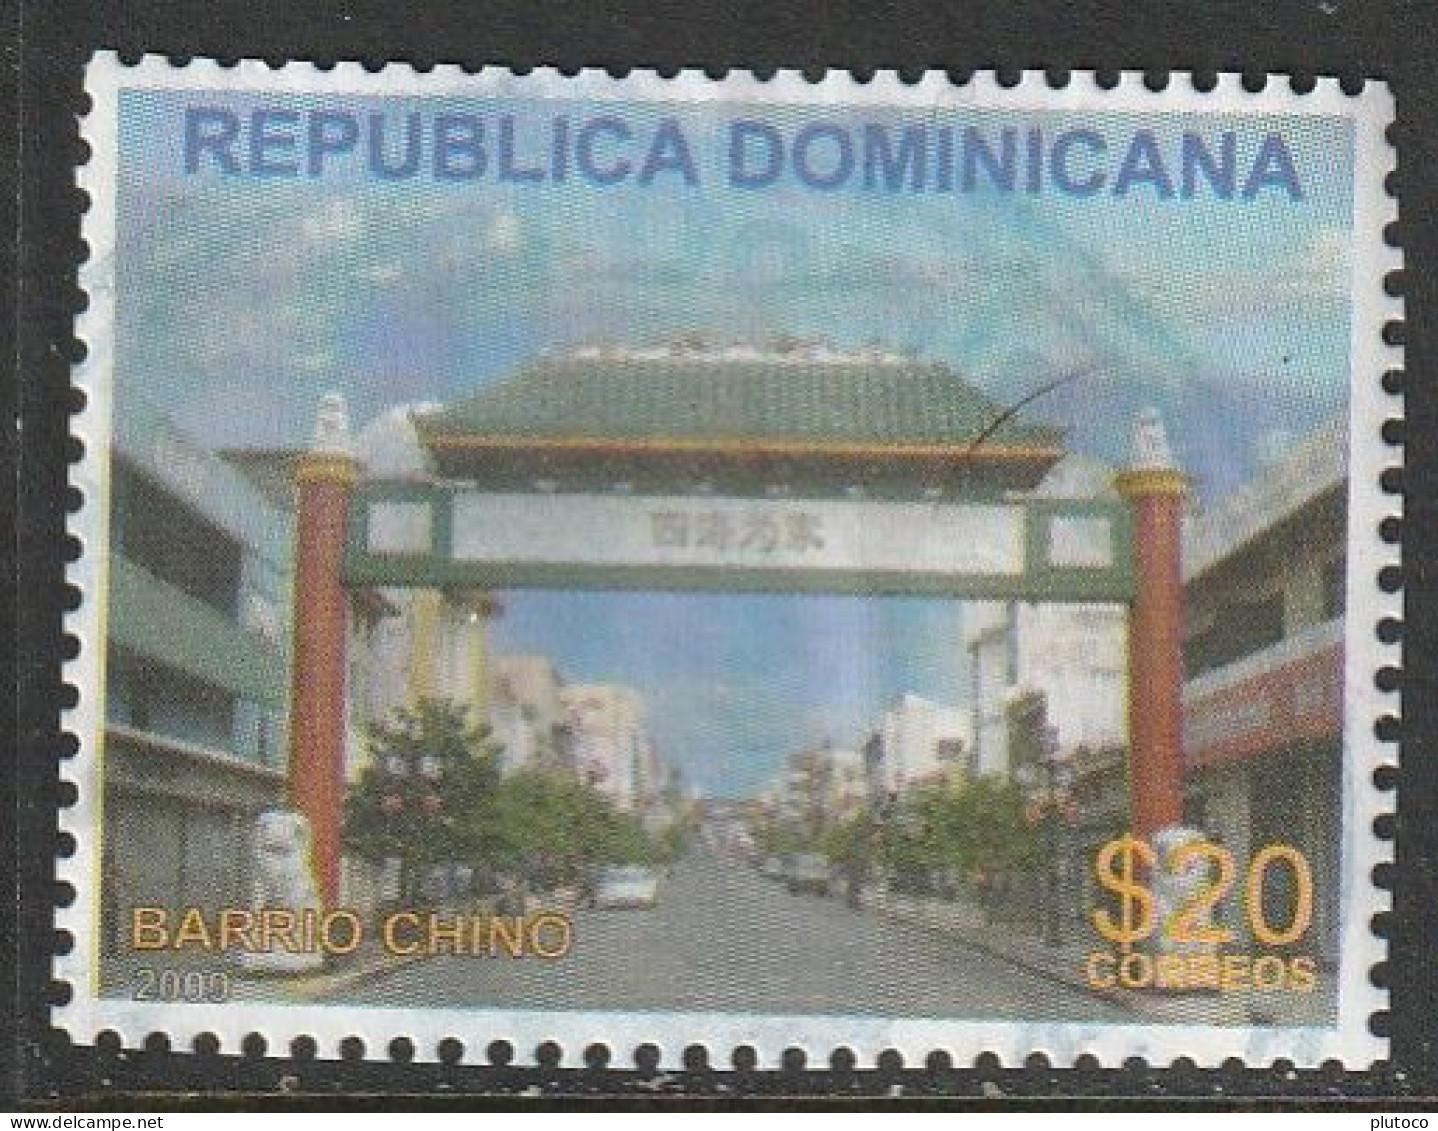 REPÚBLICA DOMINICANA, USED STAMP, OBLITERÉ, SELLO USADO - Dominicaanse Republiek